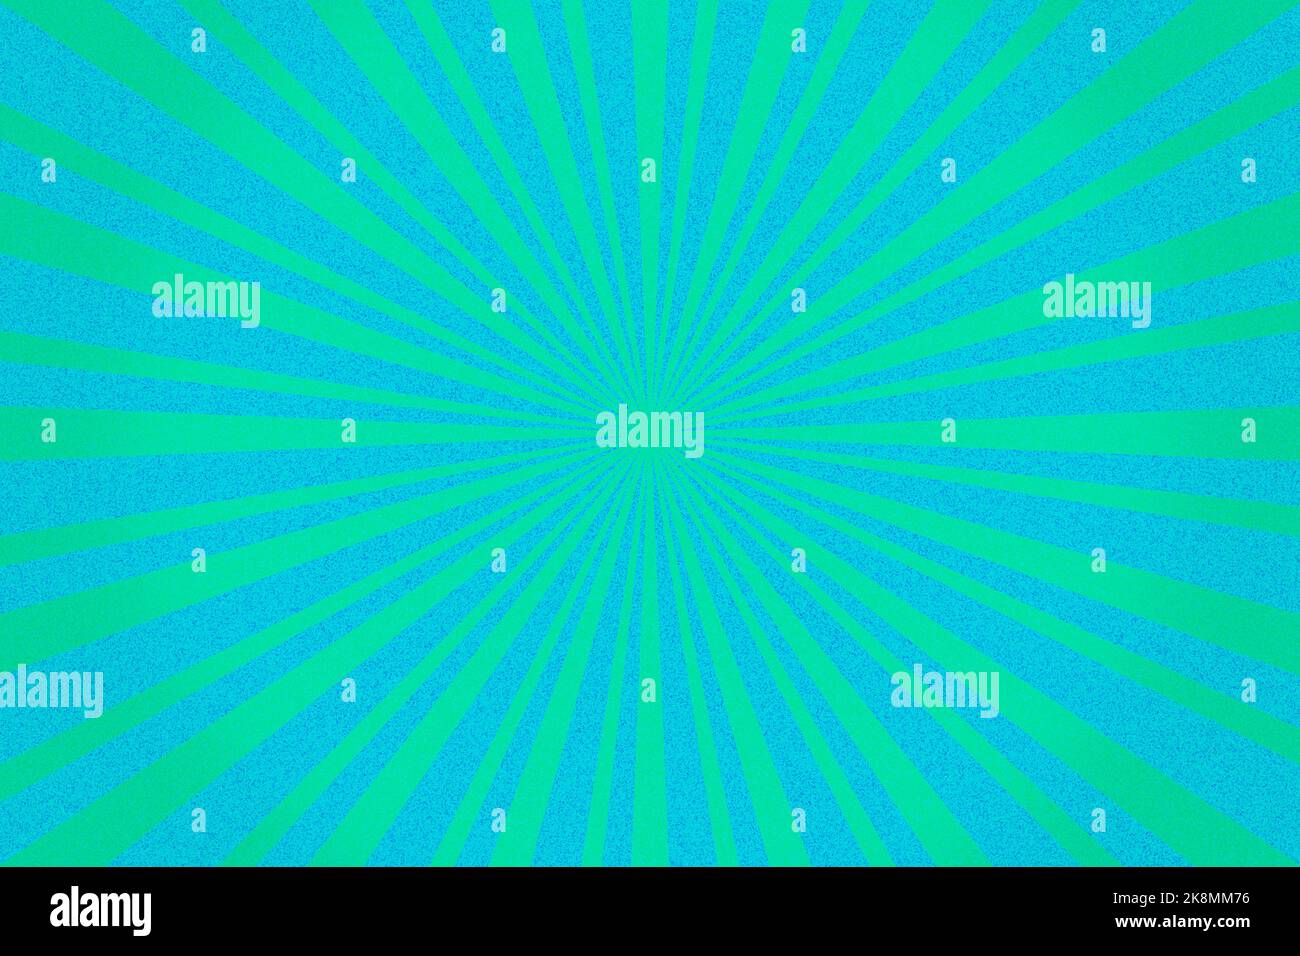 Arrière-plan de motif Sunburst bleu et vert grainé. Illustration géométrique des rayons radiaux vibrants Banque D'Images